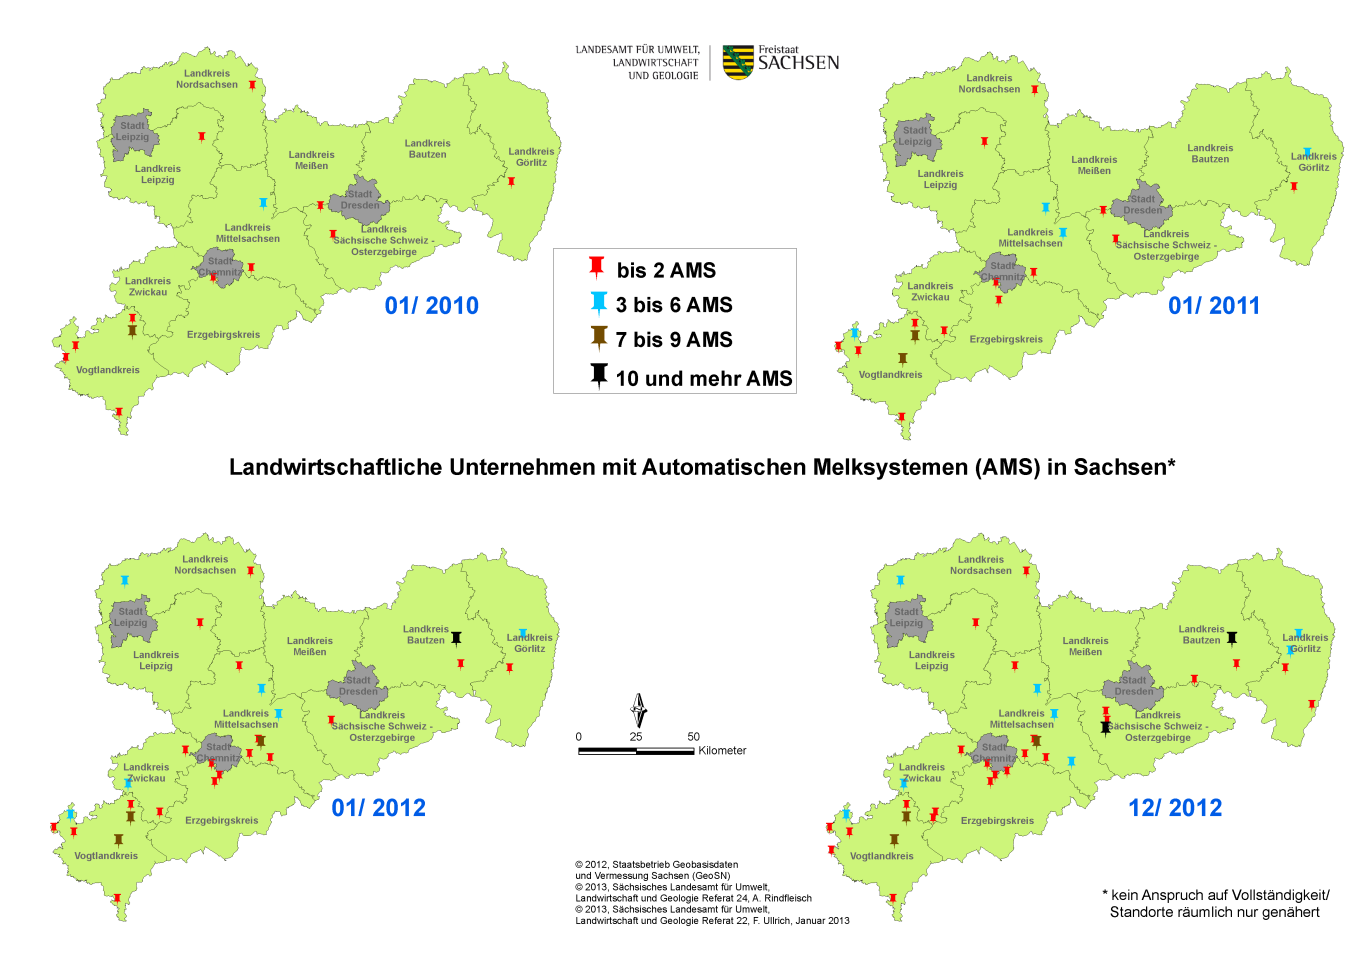 Abbildung 1: Landwirtschaftliche Unternehmen mit AMS in Sachsen 2.